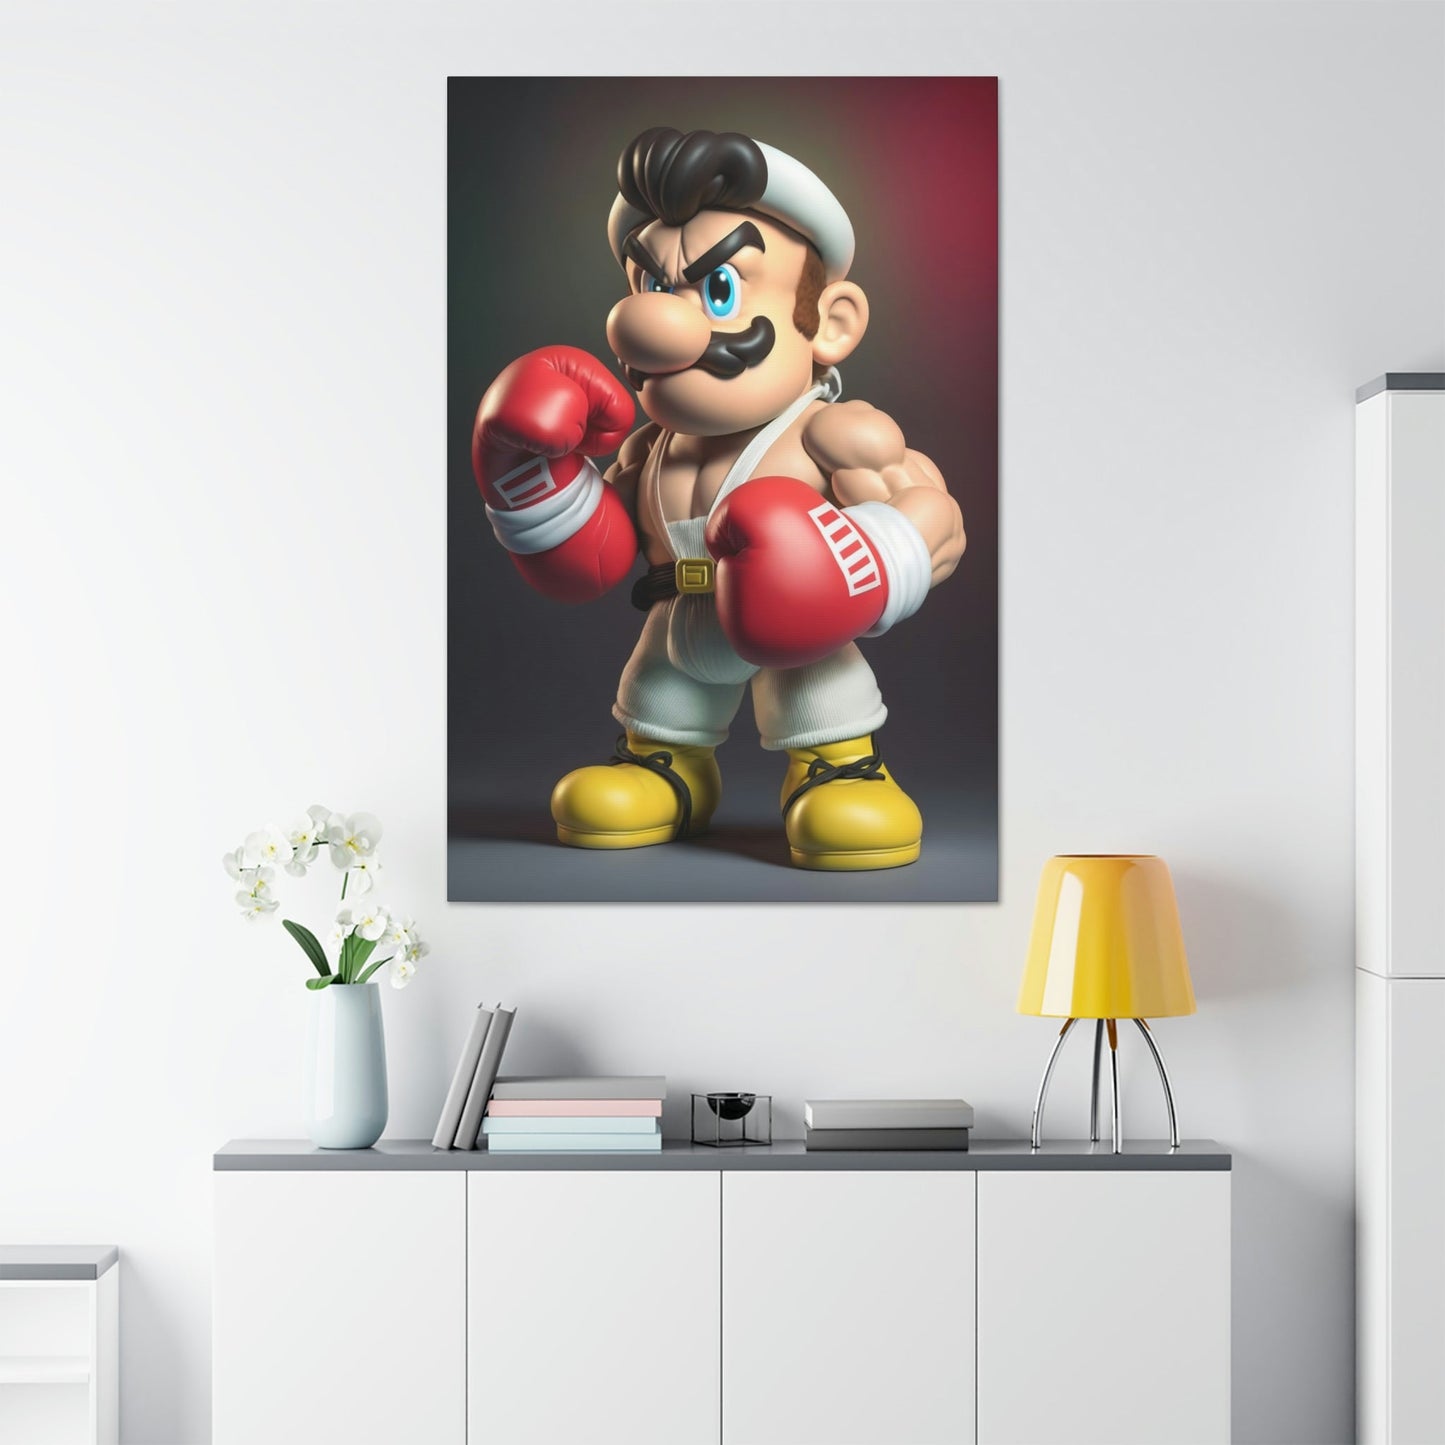 Mario's Adventure: A Canvas Journey